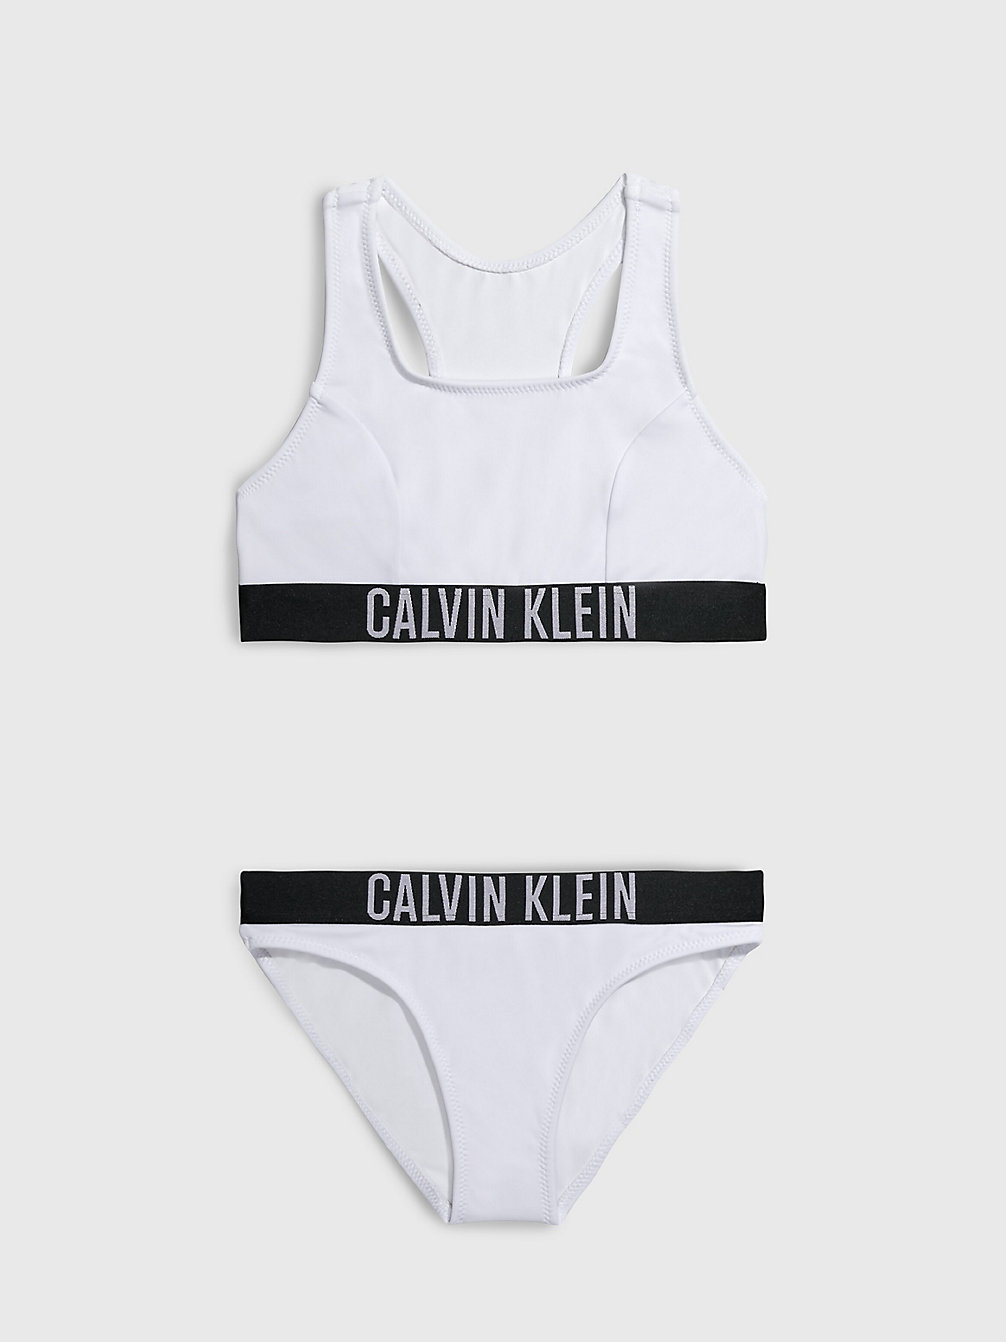 PVH CLASSIC WHITE > Dziewczęcy Zestaw Bikini Z Braletką- Intense Power > undefined girls - Calvin Klein